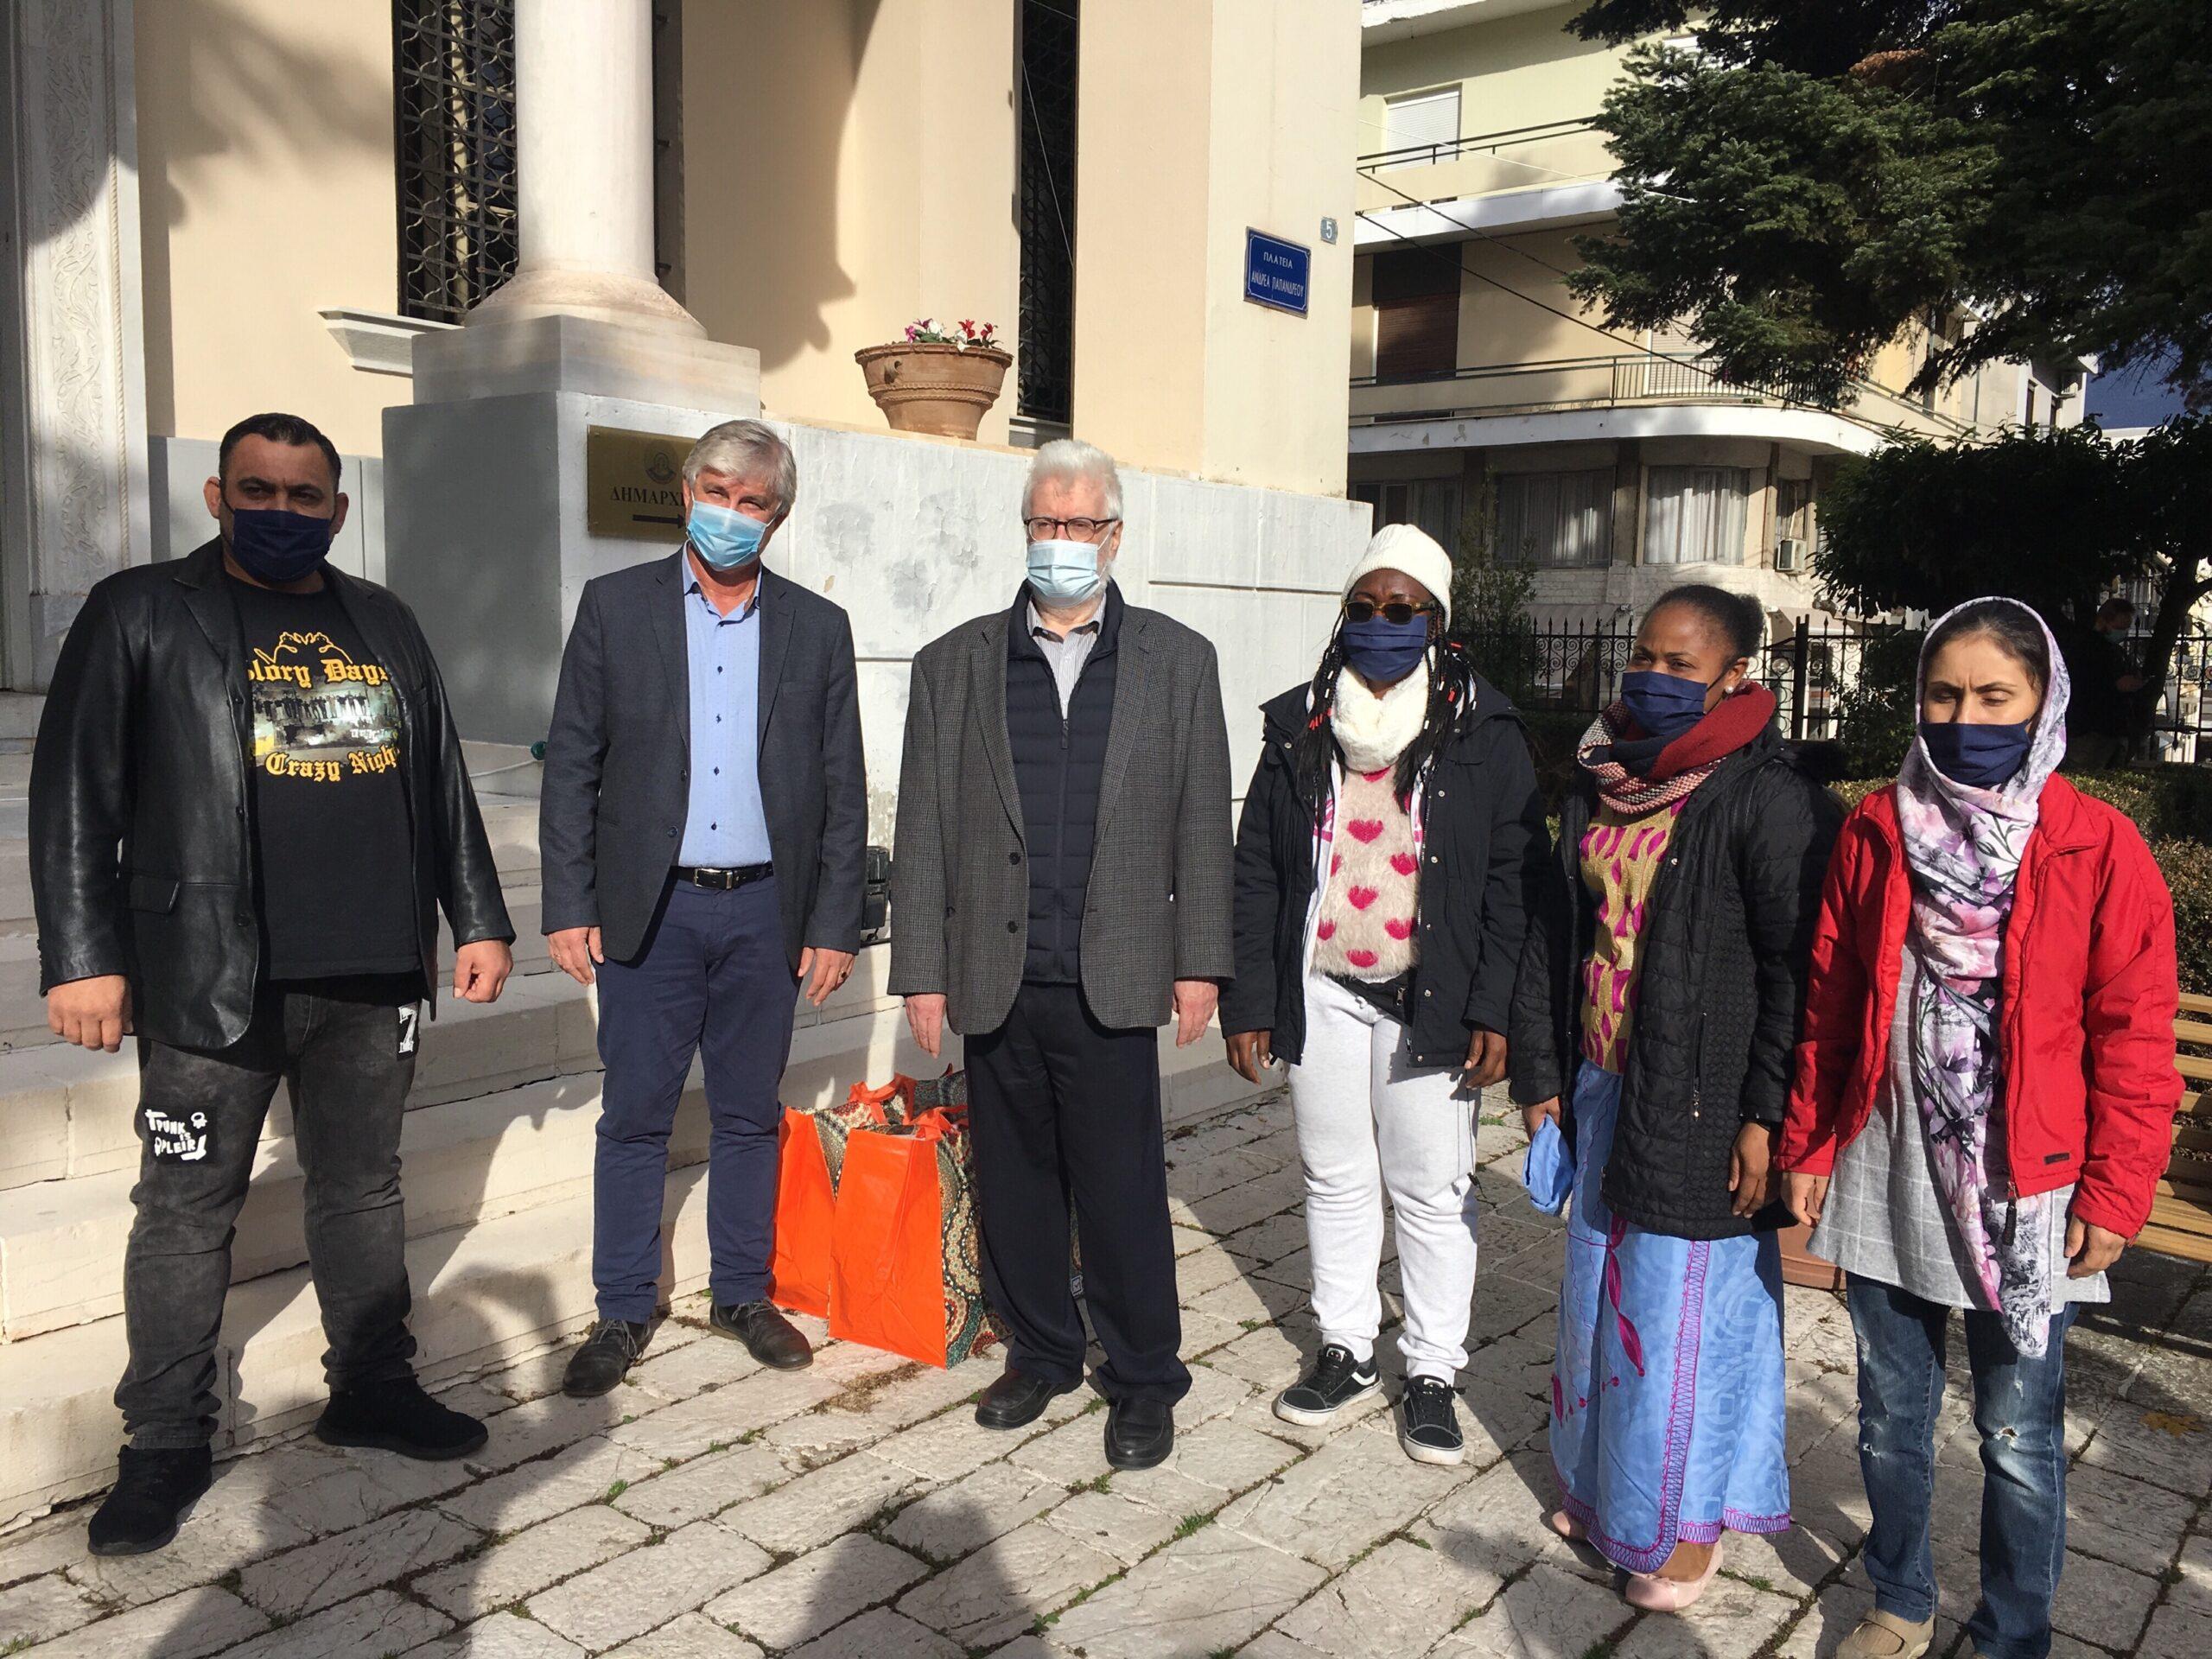 Ο Δήμαρχος Ιωαννιτών, Μωυσής Ελισάφ, παραλαμβάνει τις 565 υφασμάτινες μάσκες μάσκες που δώρισαν οι ωφελούμενοι του προγράμματος  ESTIA, οι οποίοι φιλοξενούνται στη Δομή της Αγίας Ελένης, στον 
Δήμο Ιωαννιτών ώστε να τις διαθέσει σε ευάλωτες κοινωνικές  ομάδες, Δεκέμβριος 2020. 